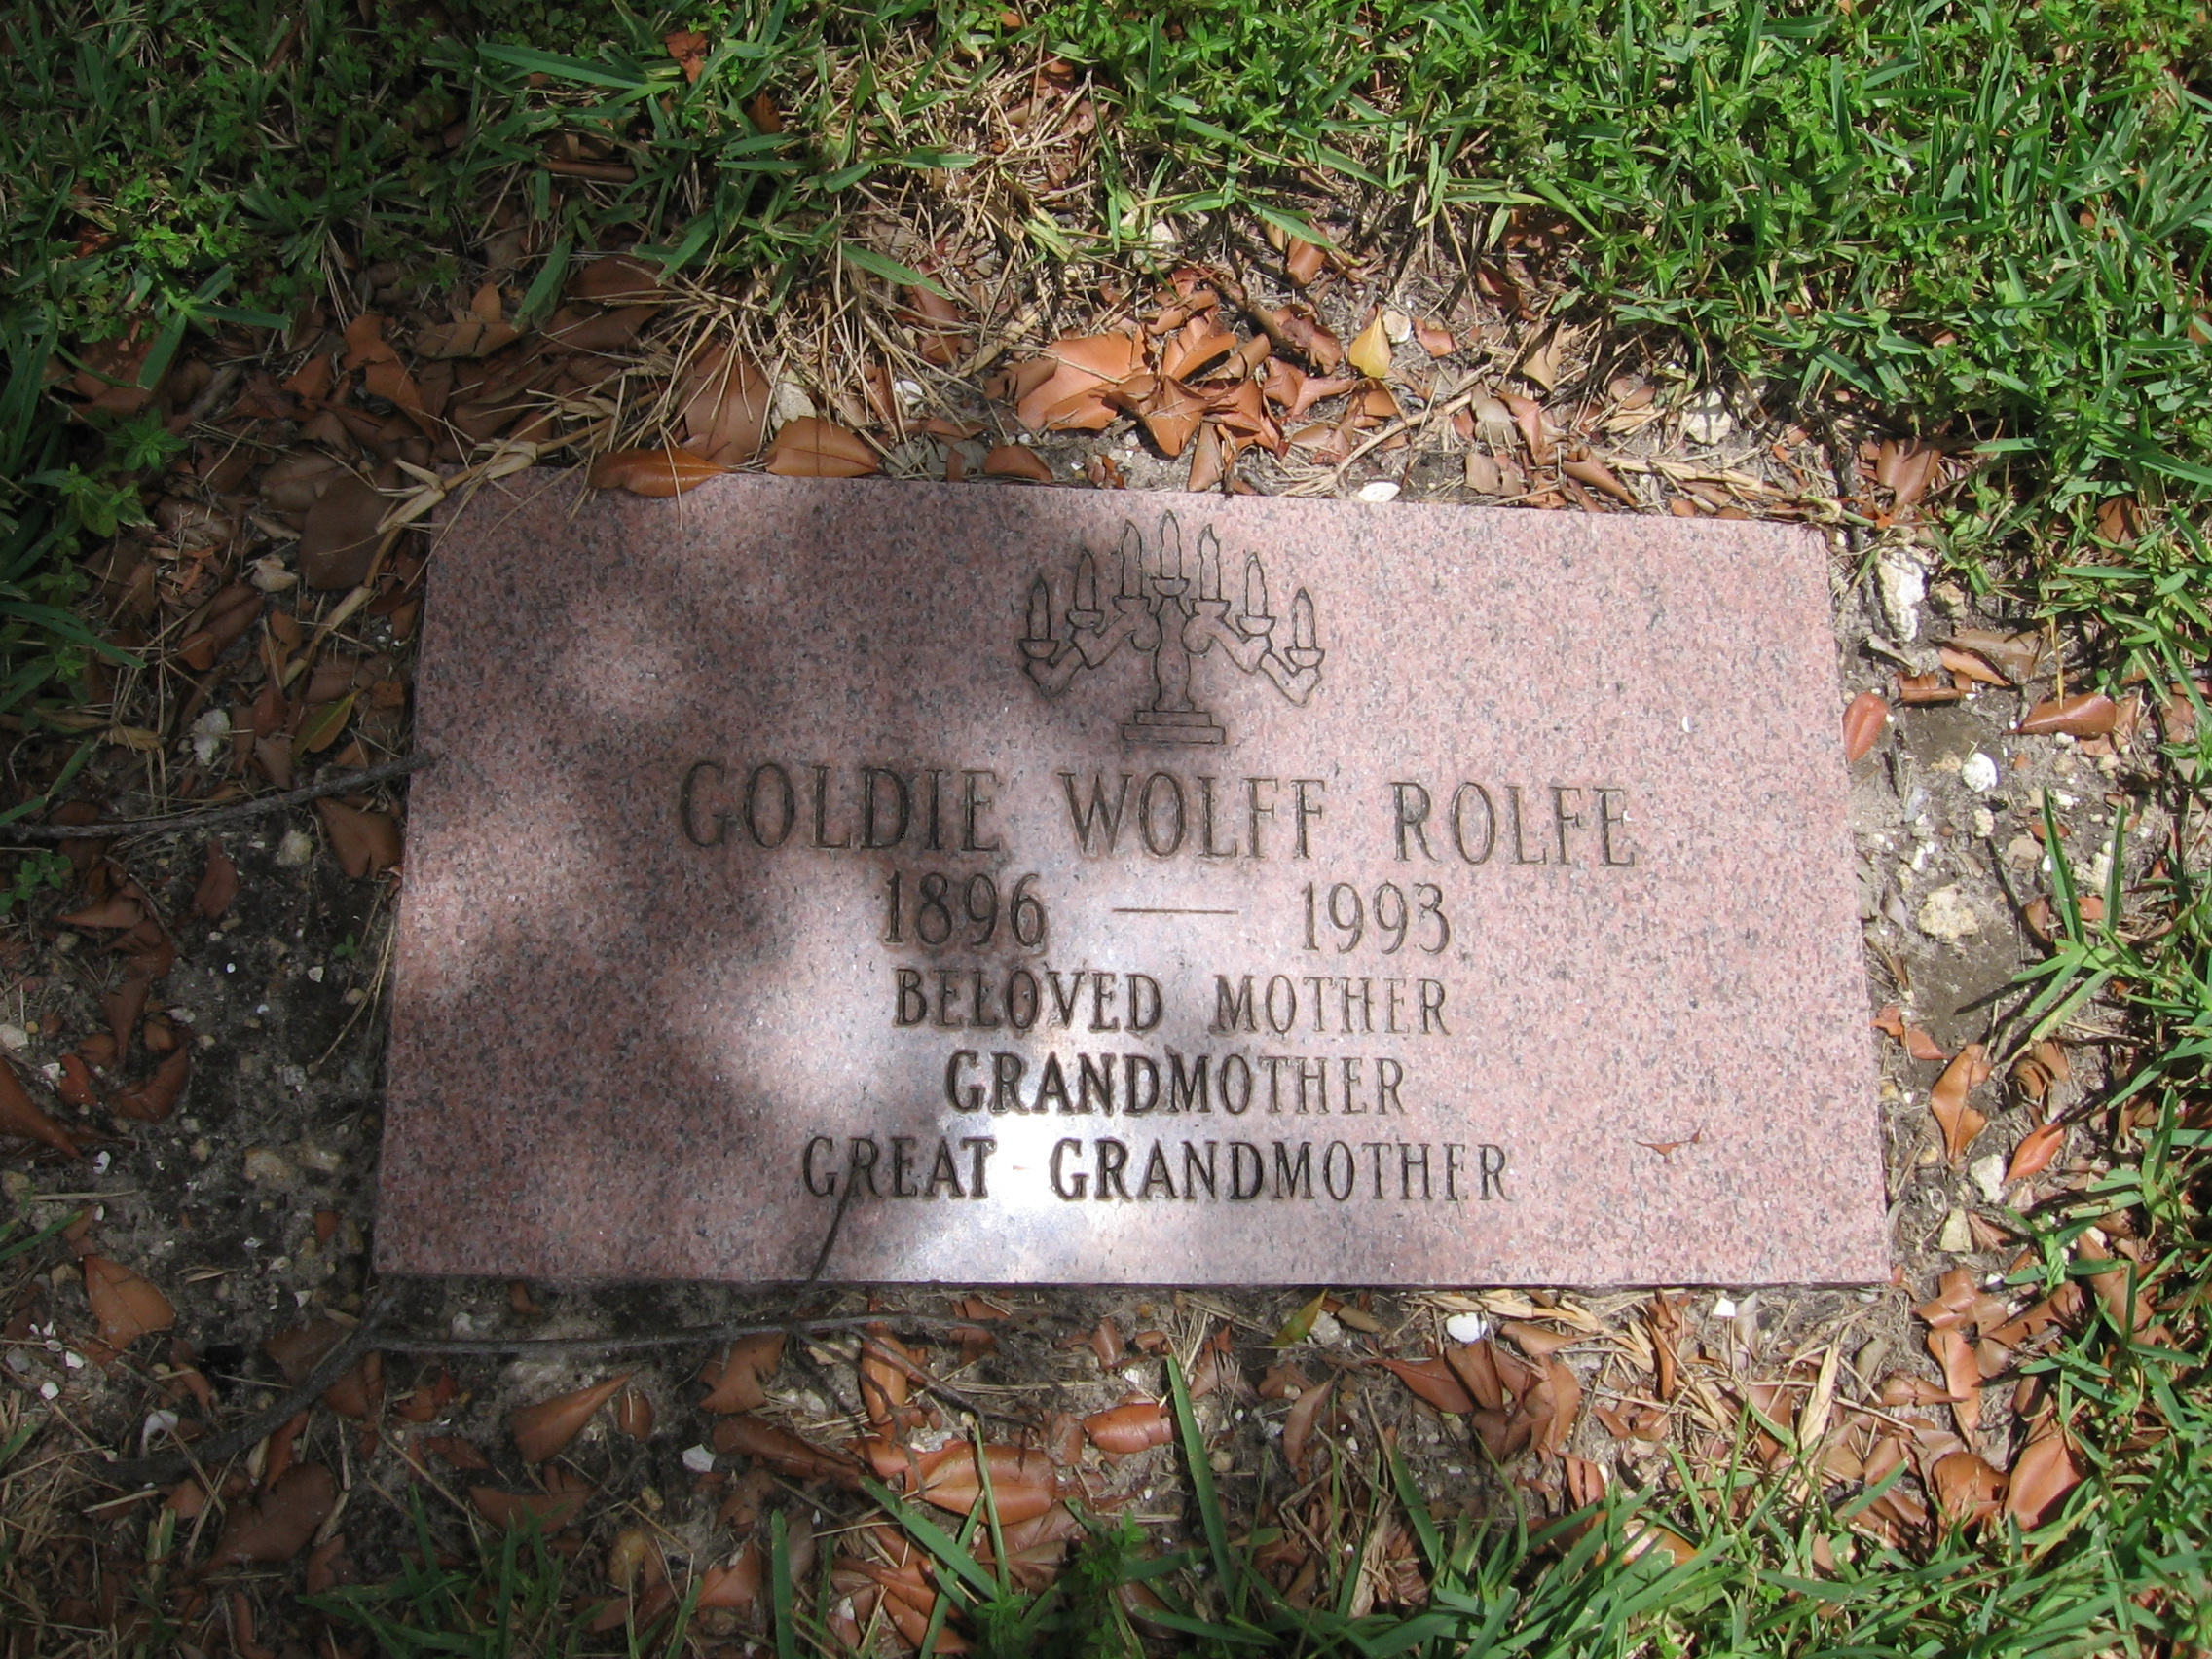 Goldie Wolff Rolfe